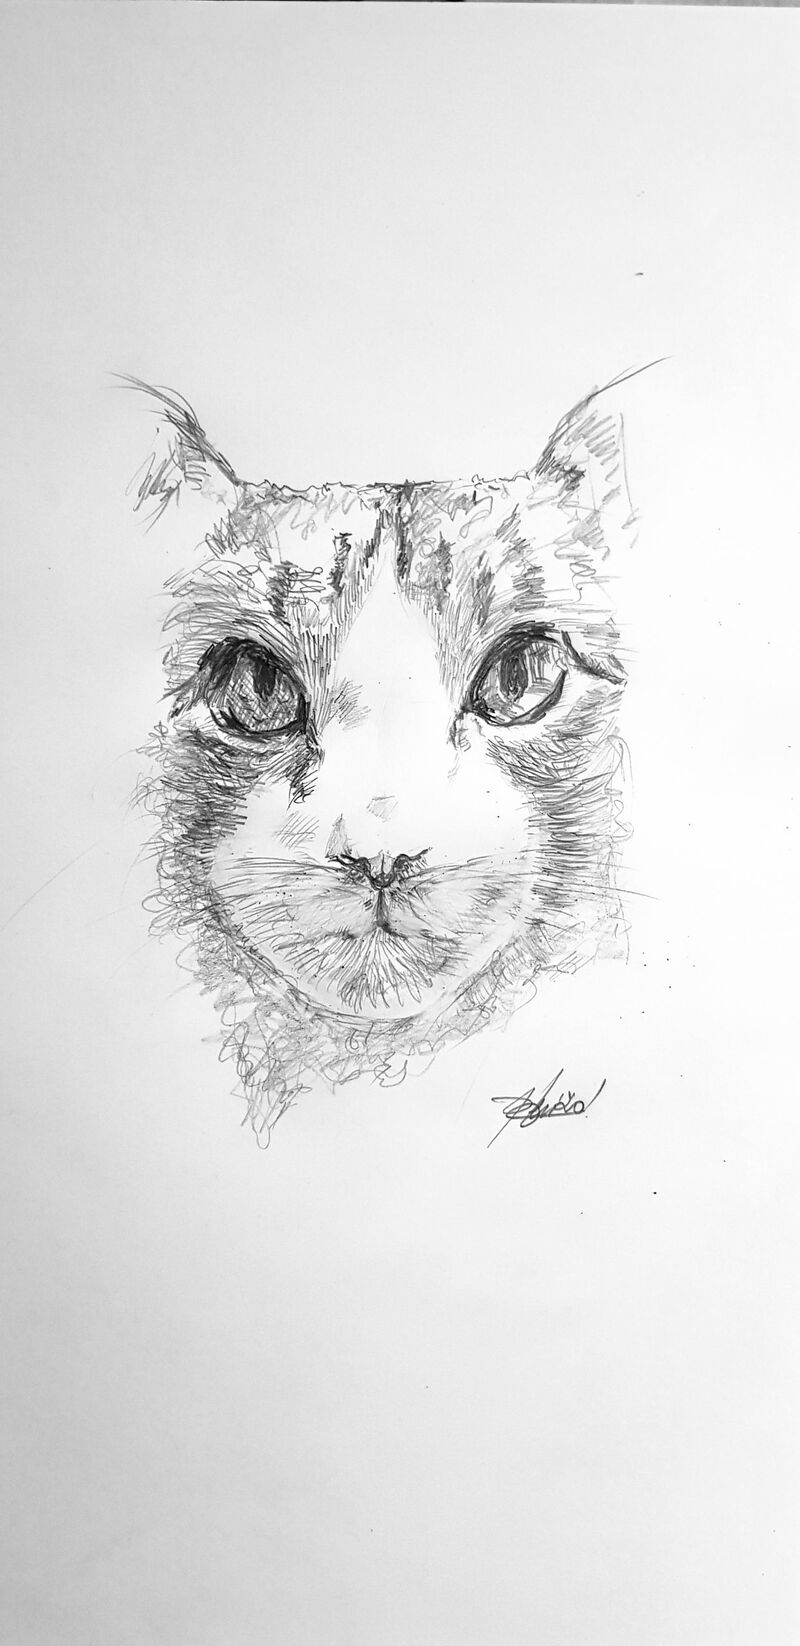 The cat - a Paint by Riccardo Leri